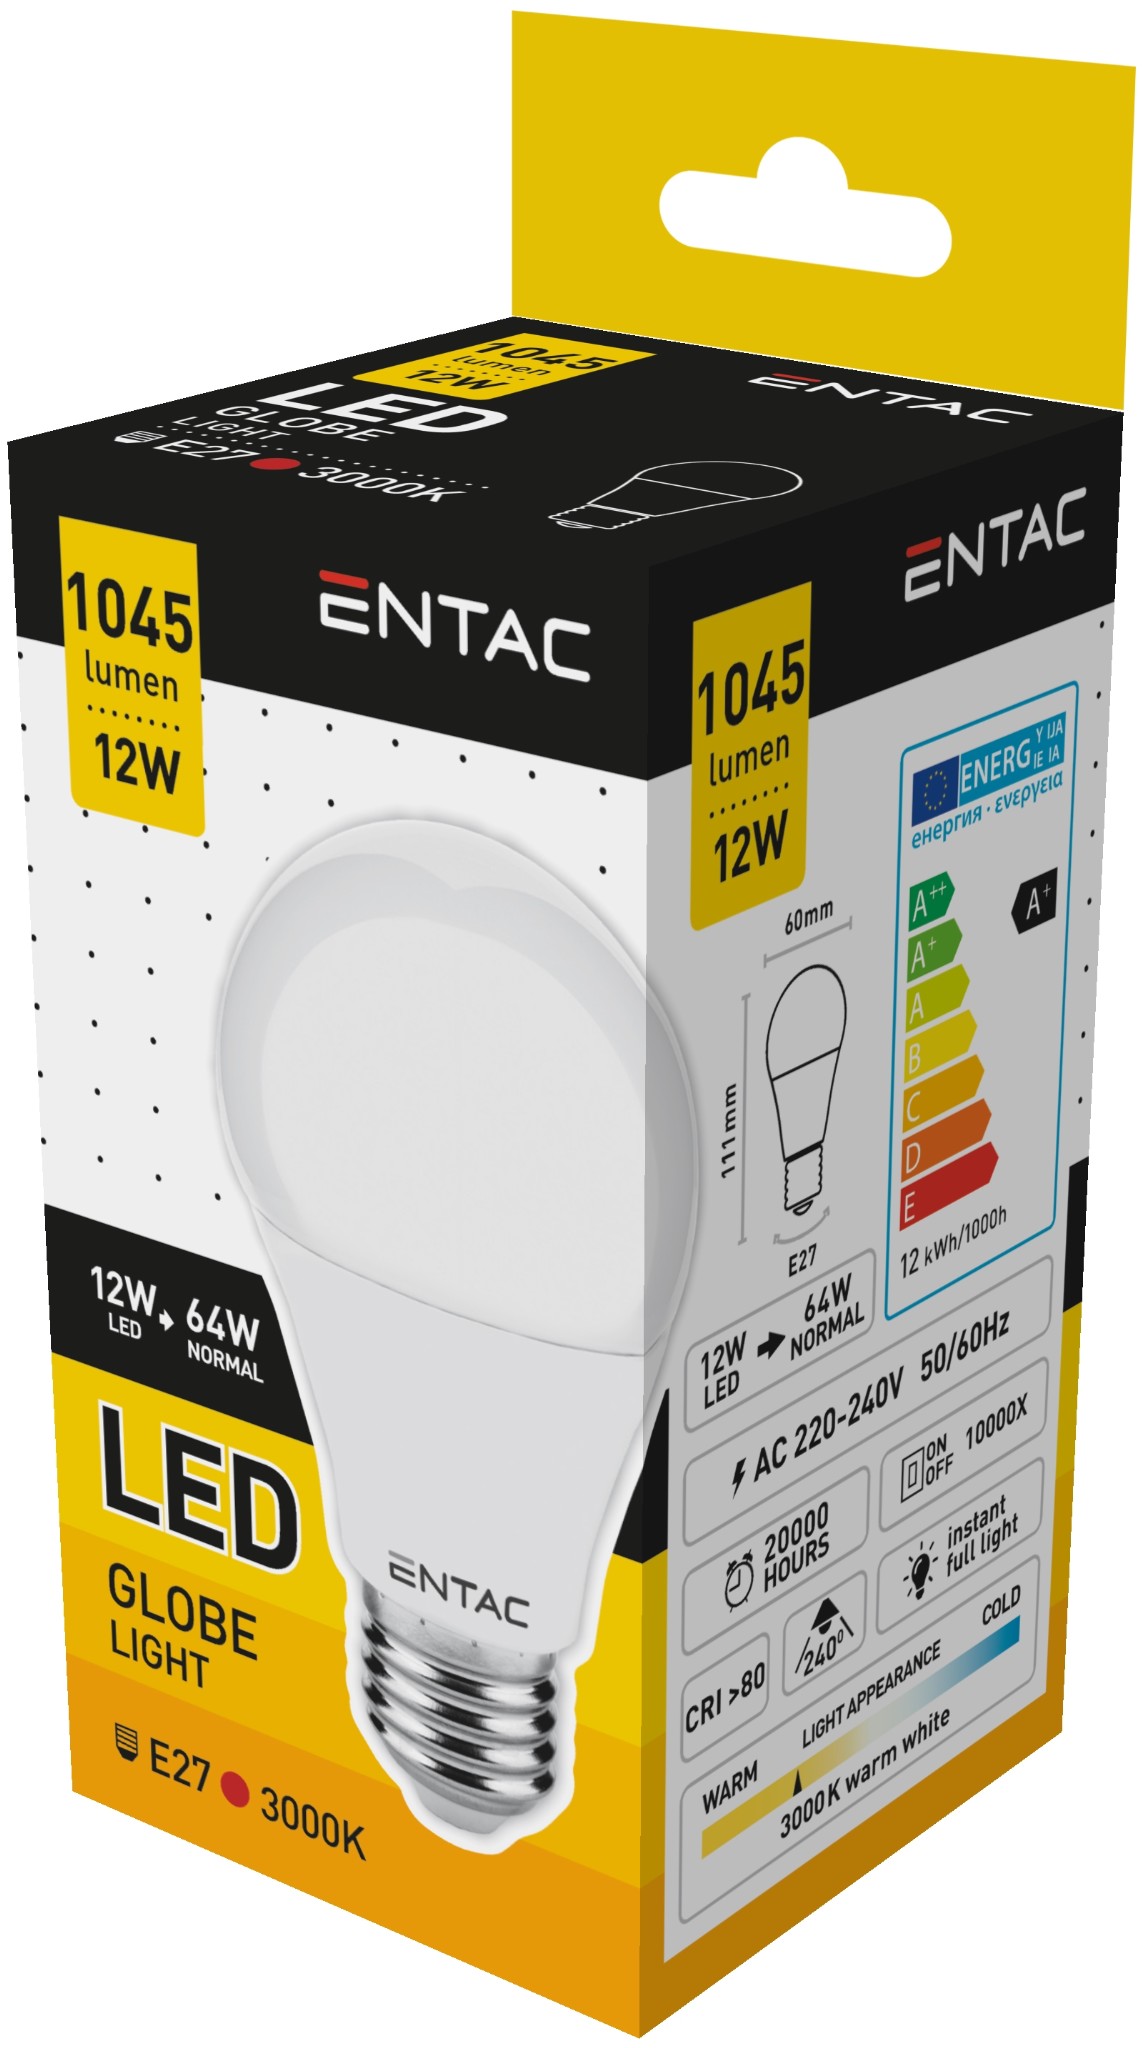 Entac LED Lampen E27 1045lm 12W Peer